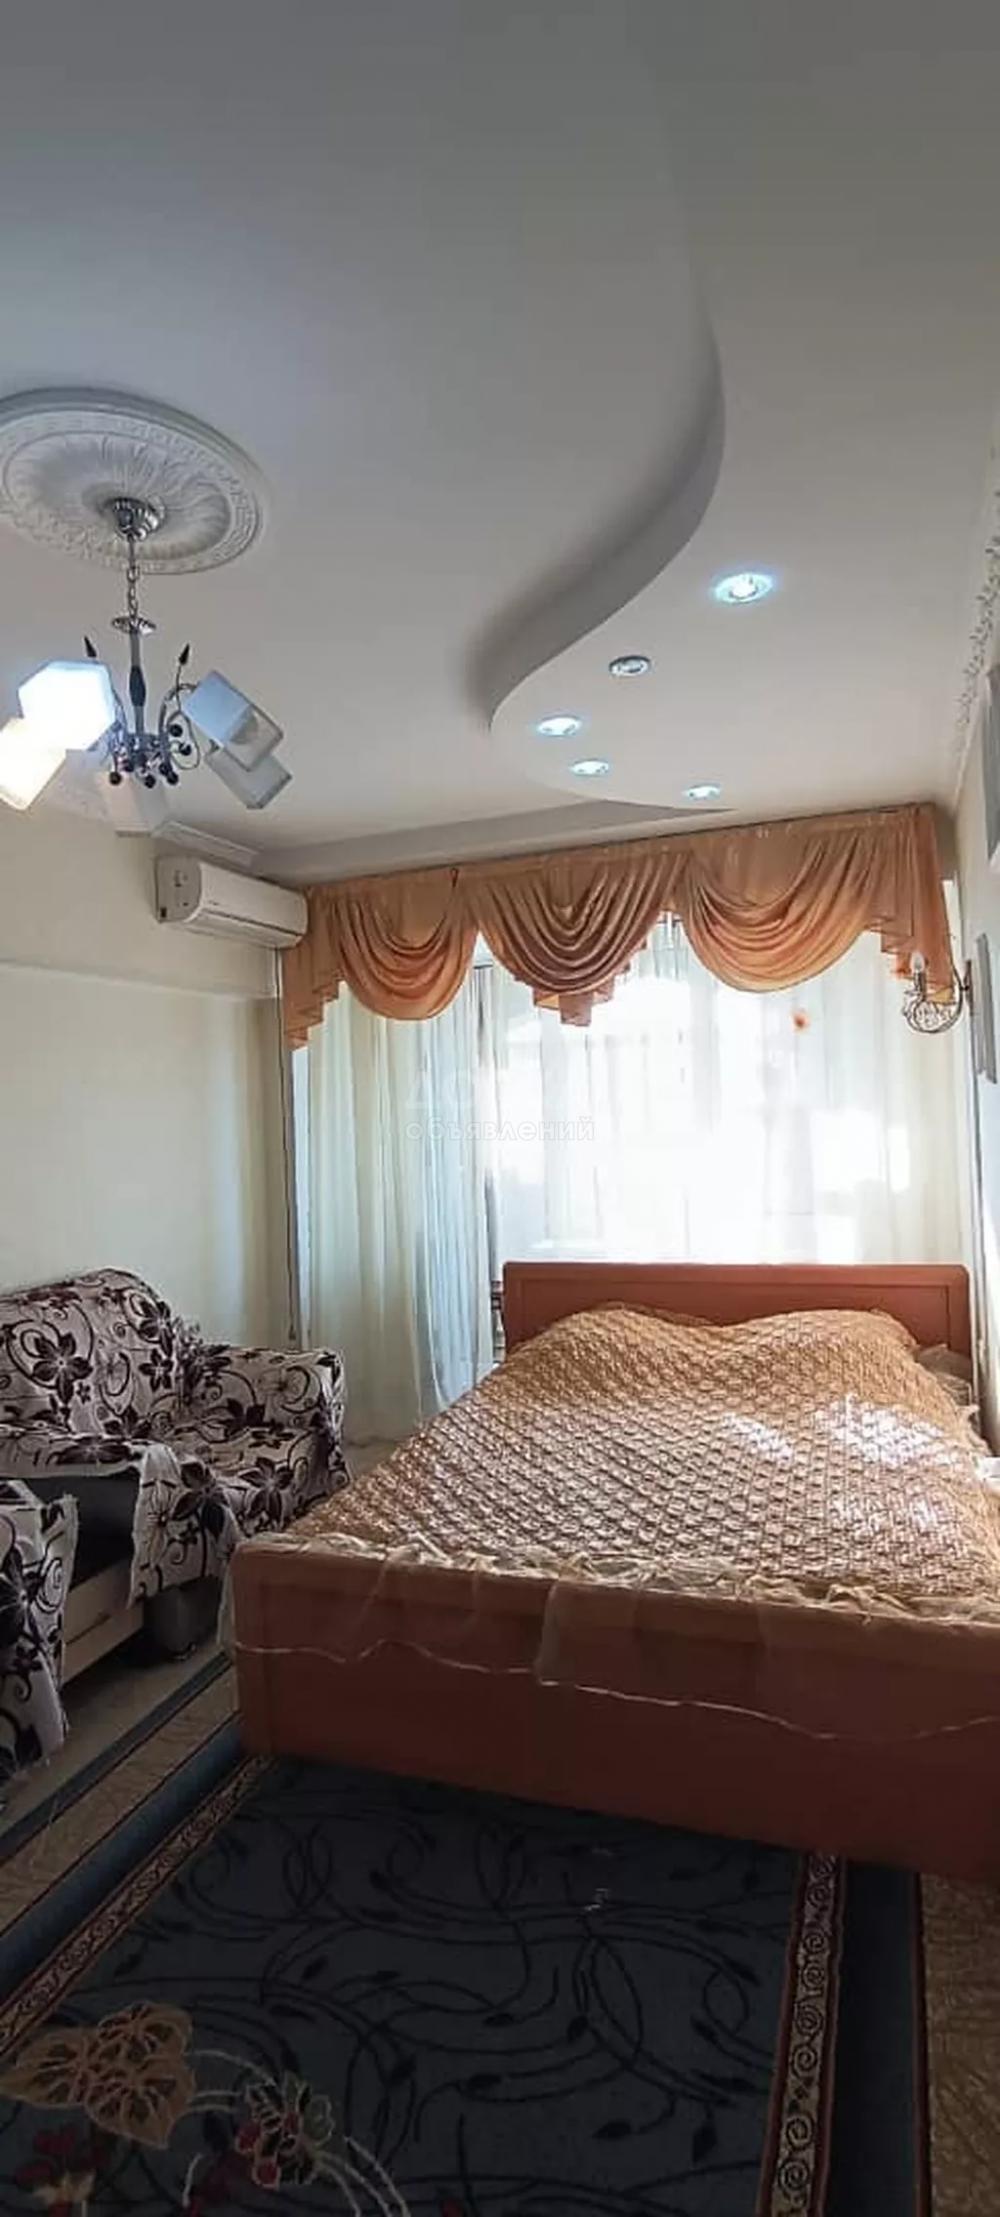 Сдаю 2-комнатную квартиру, 50кв. м., этаж - 7/9,  Посуточная квартира в Бишкеке. Час/день/ночь. Чисто. Уютно. Комфортно.